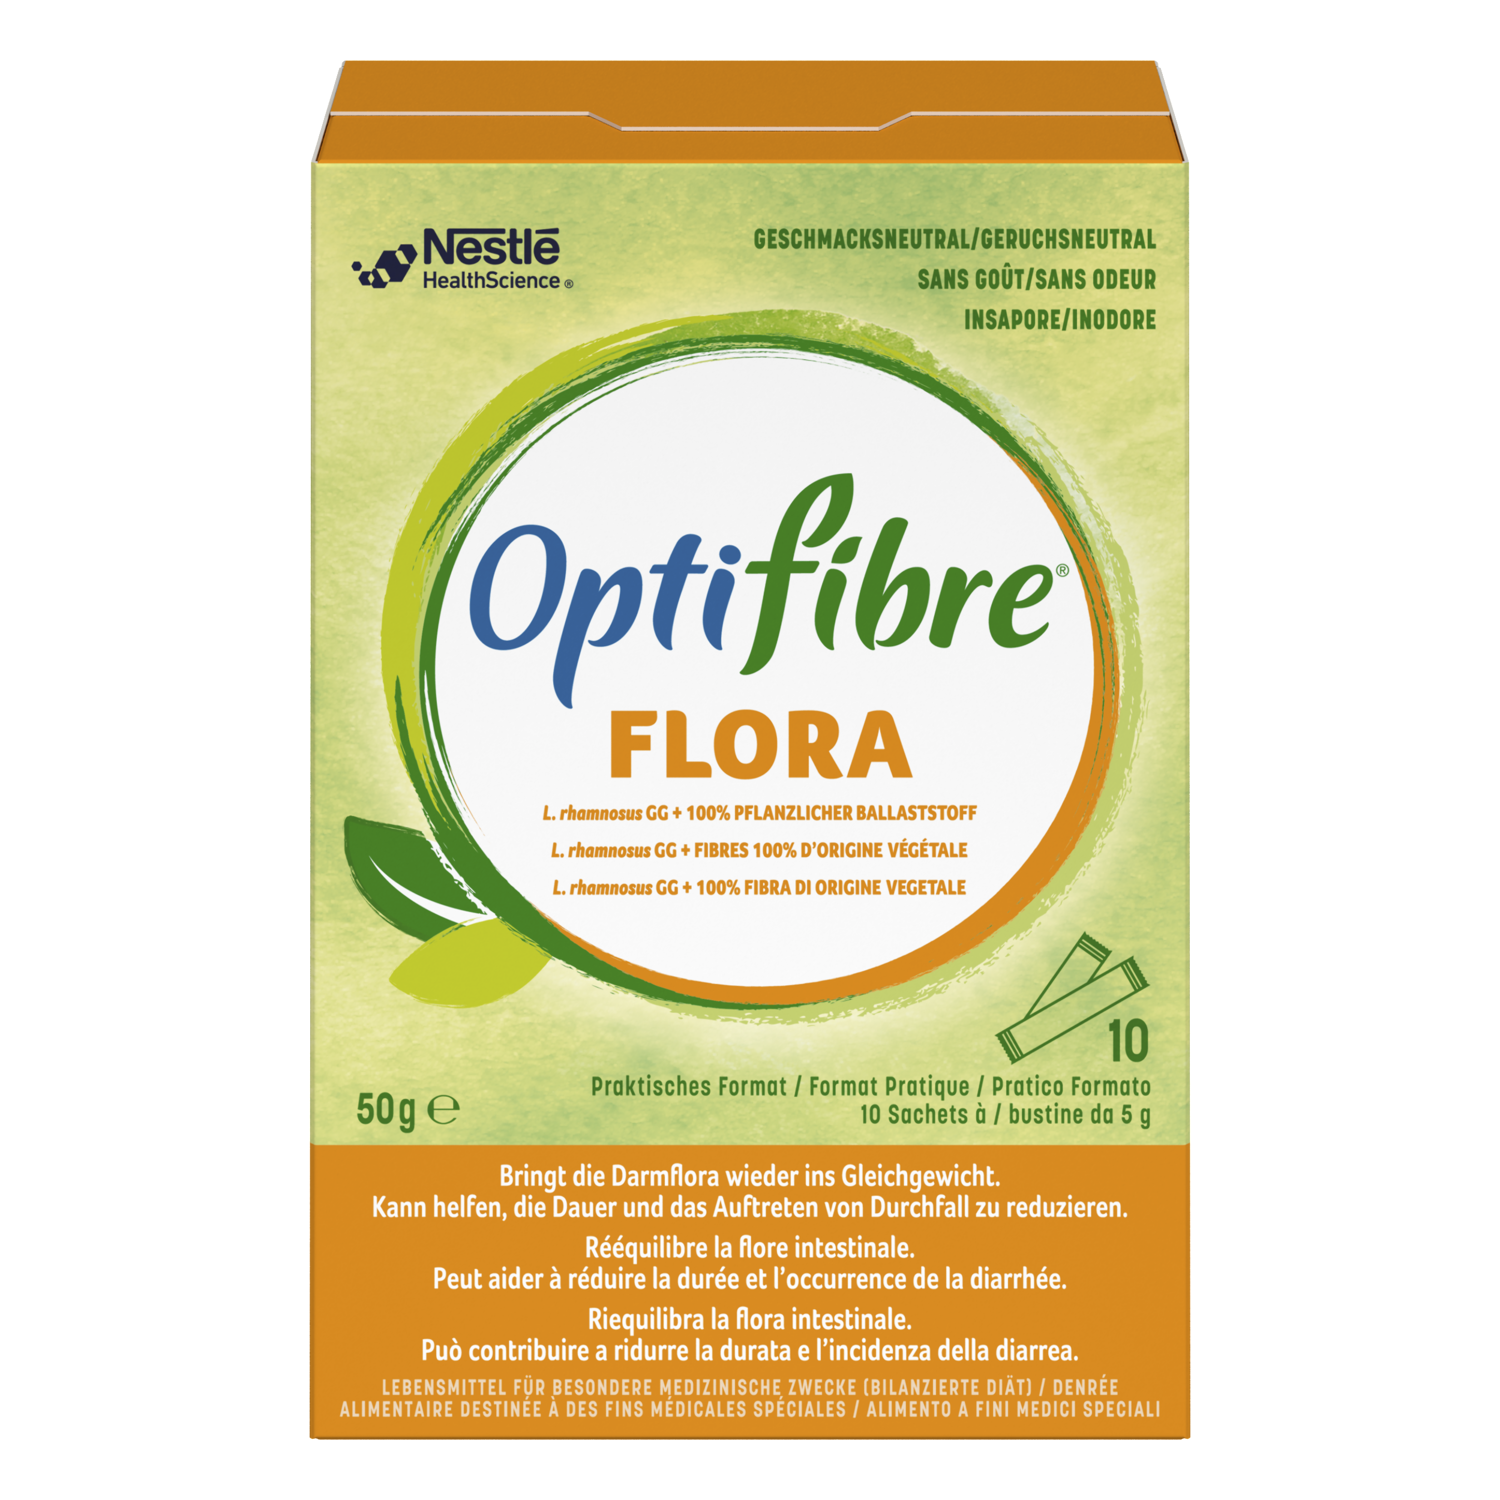 Achat OptiFibre Flora pdr 10 sach 5 g en ligne